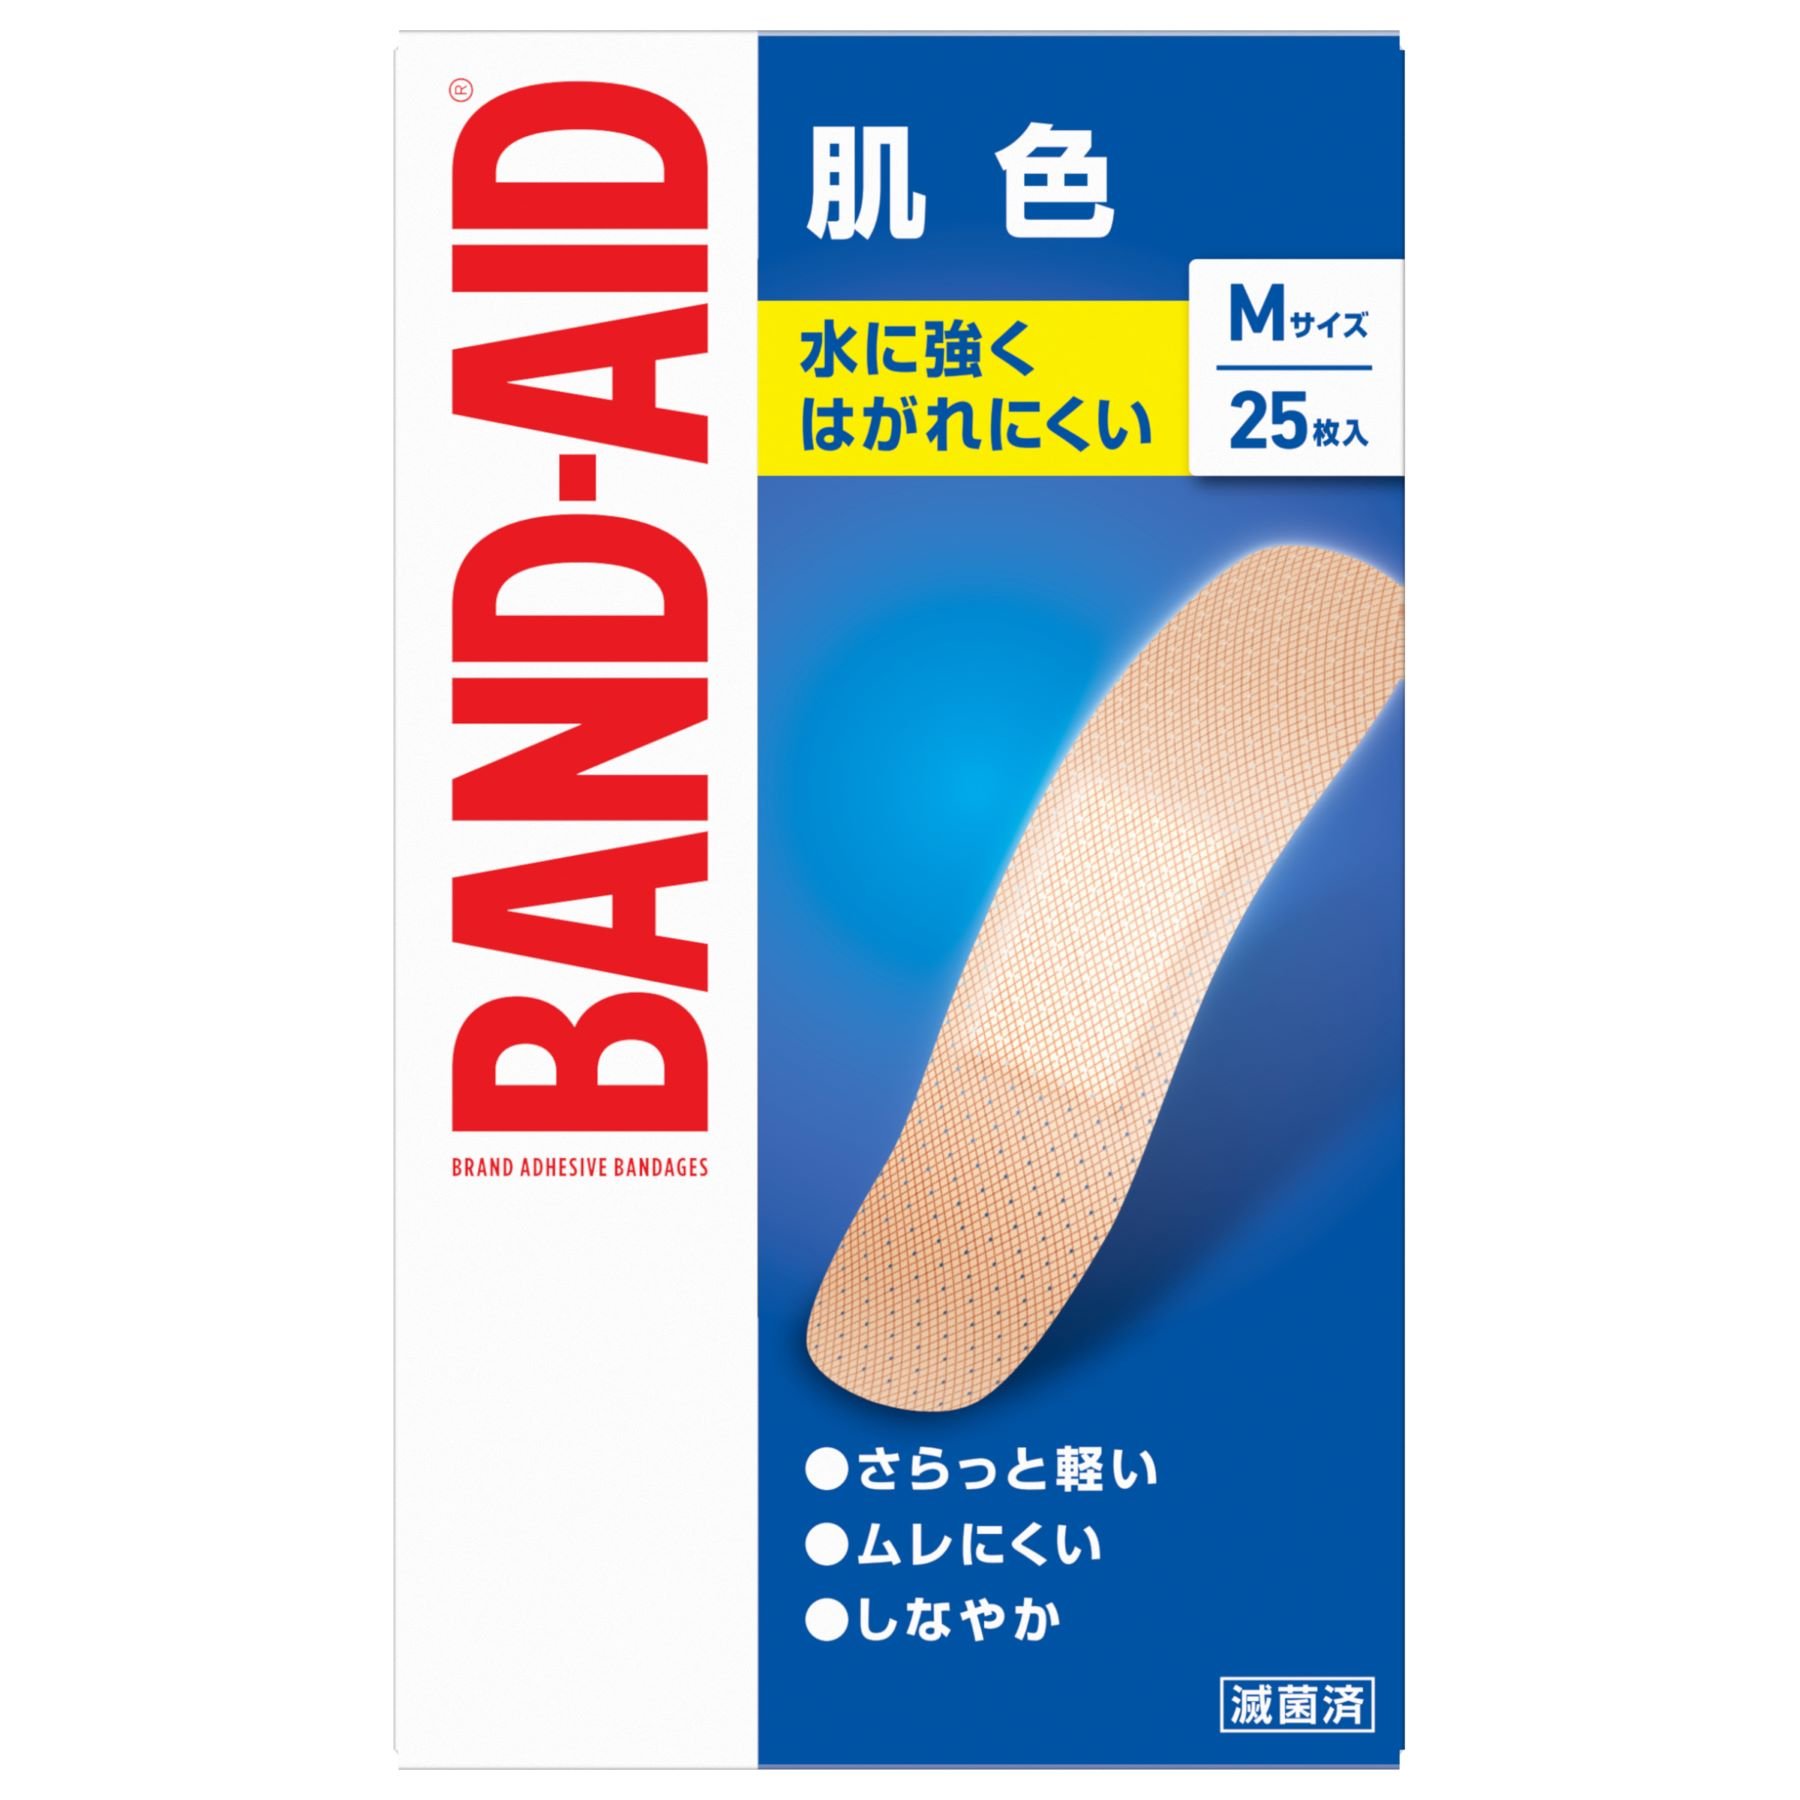 肌色タイプ | バンドエイド® BAND-AID®